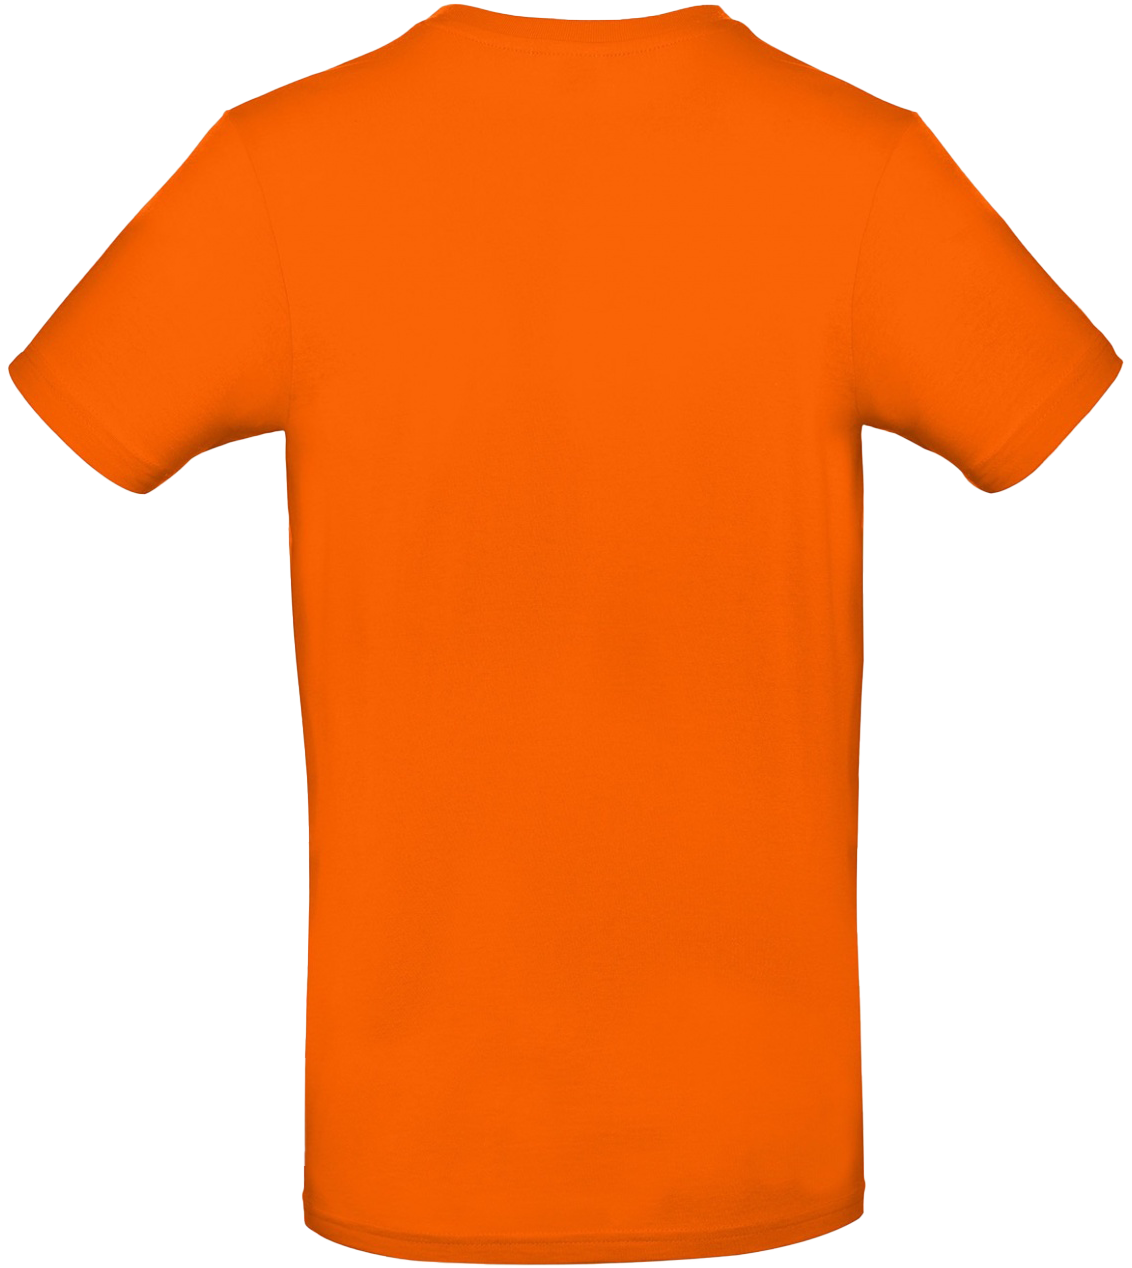 T-shirt E#190 Orange 52